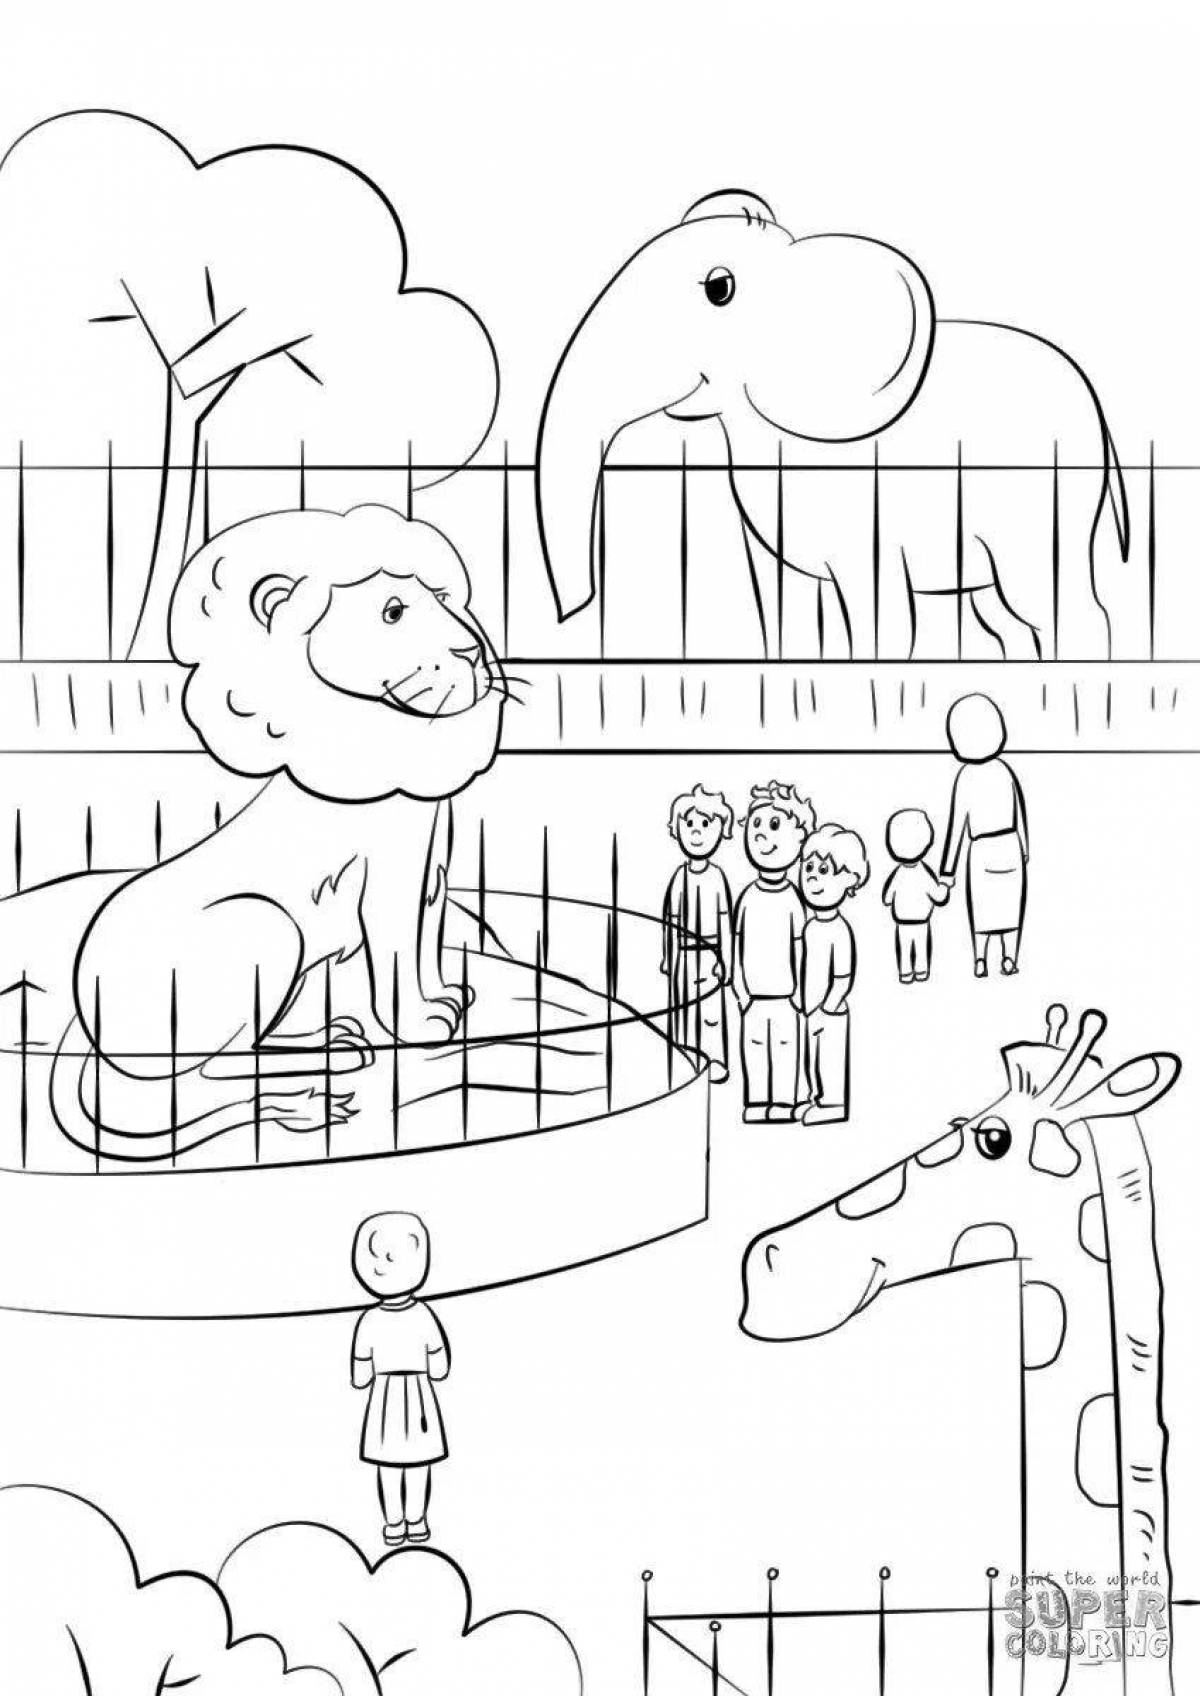 Увлекательная раскраска зоопарка для детей